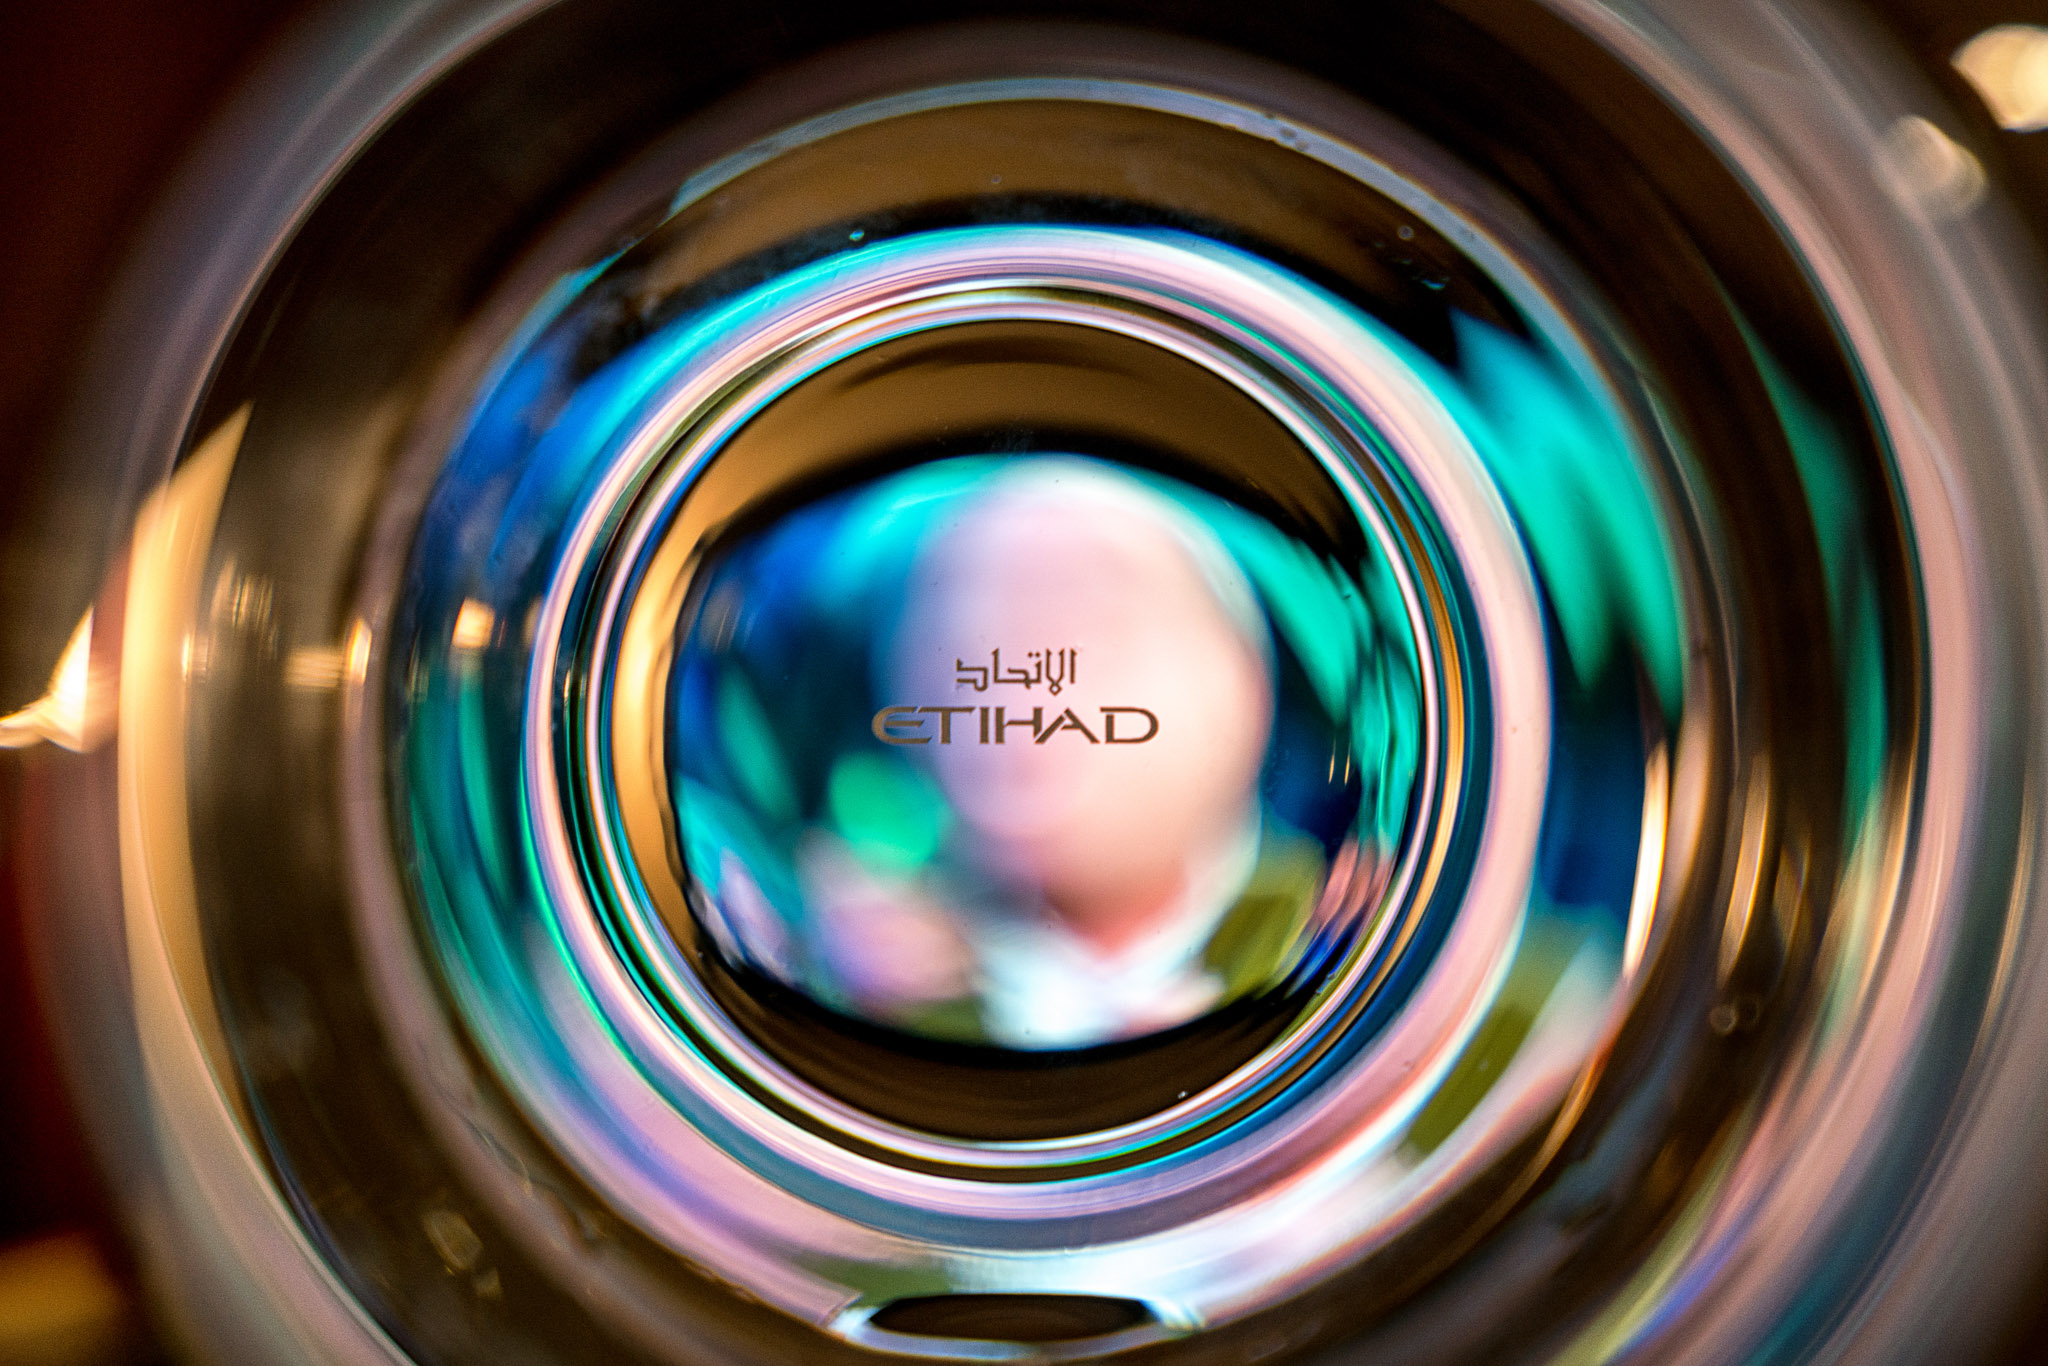 a close up of a lens